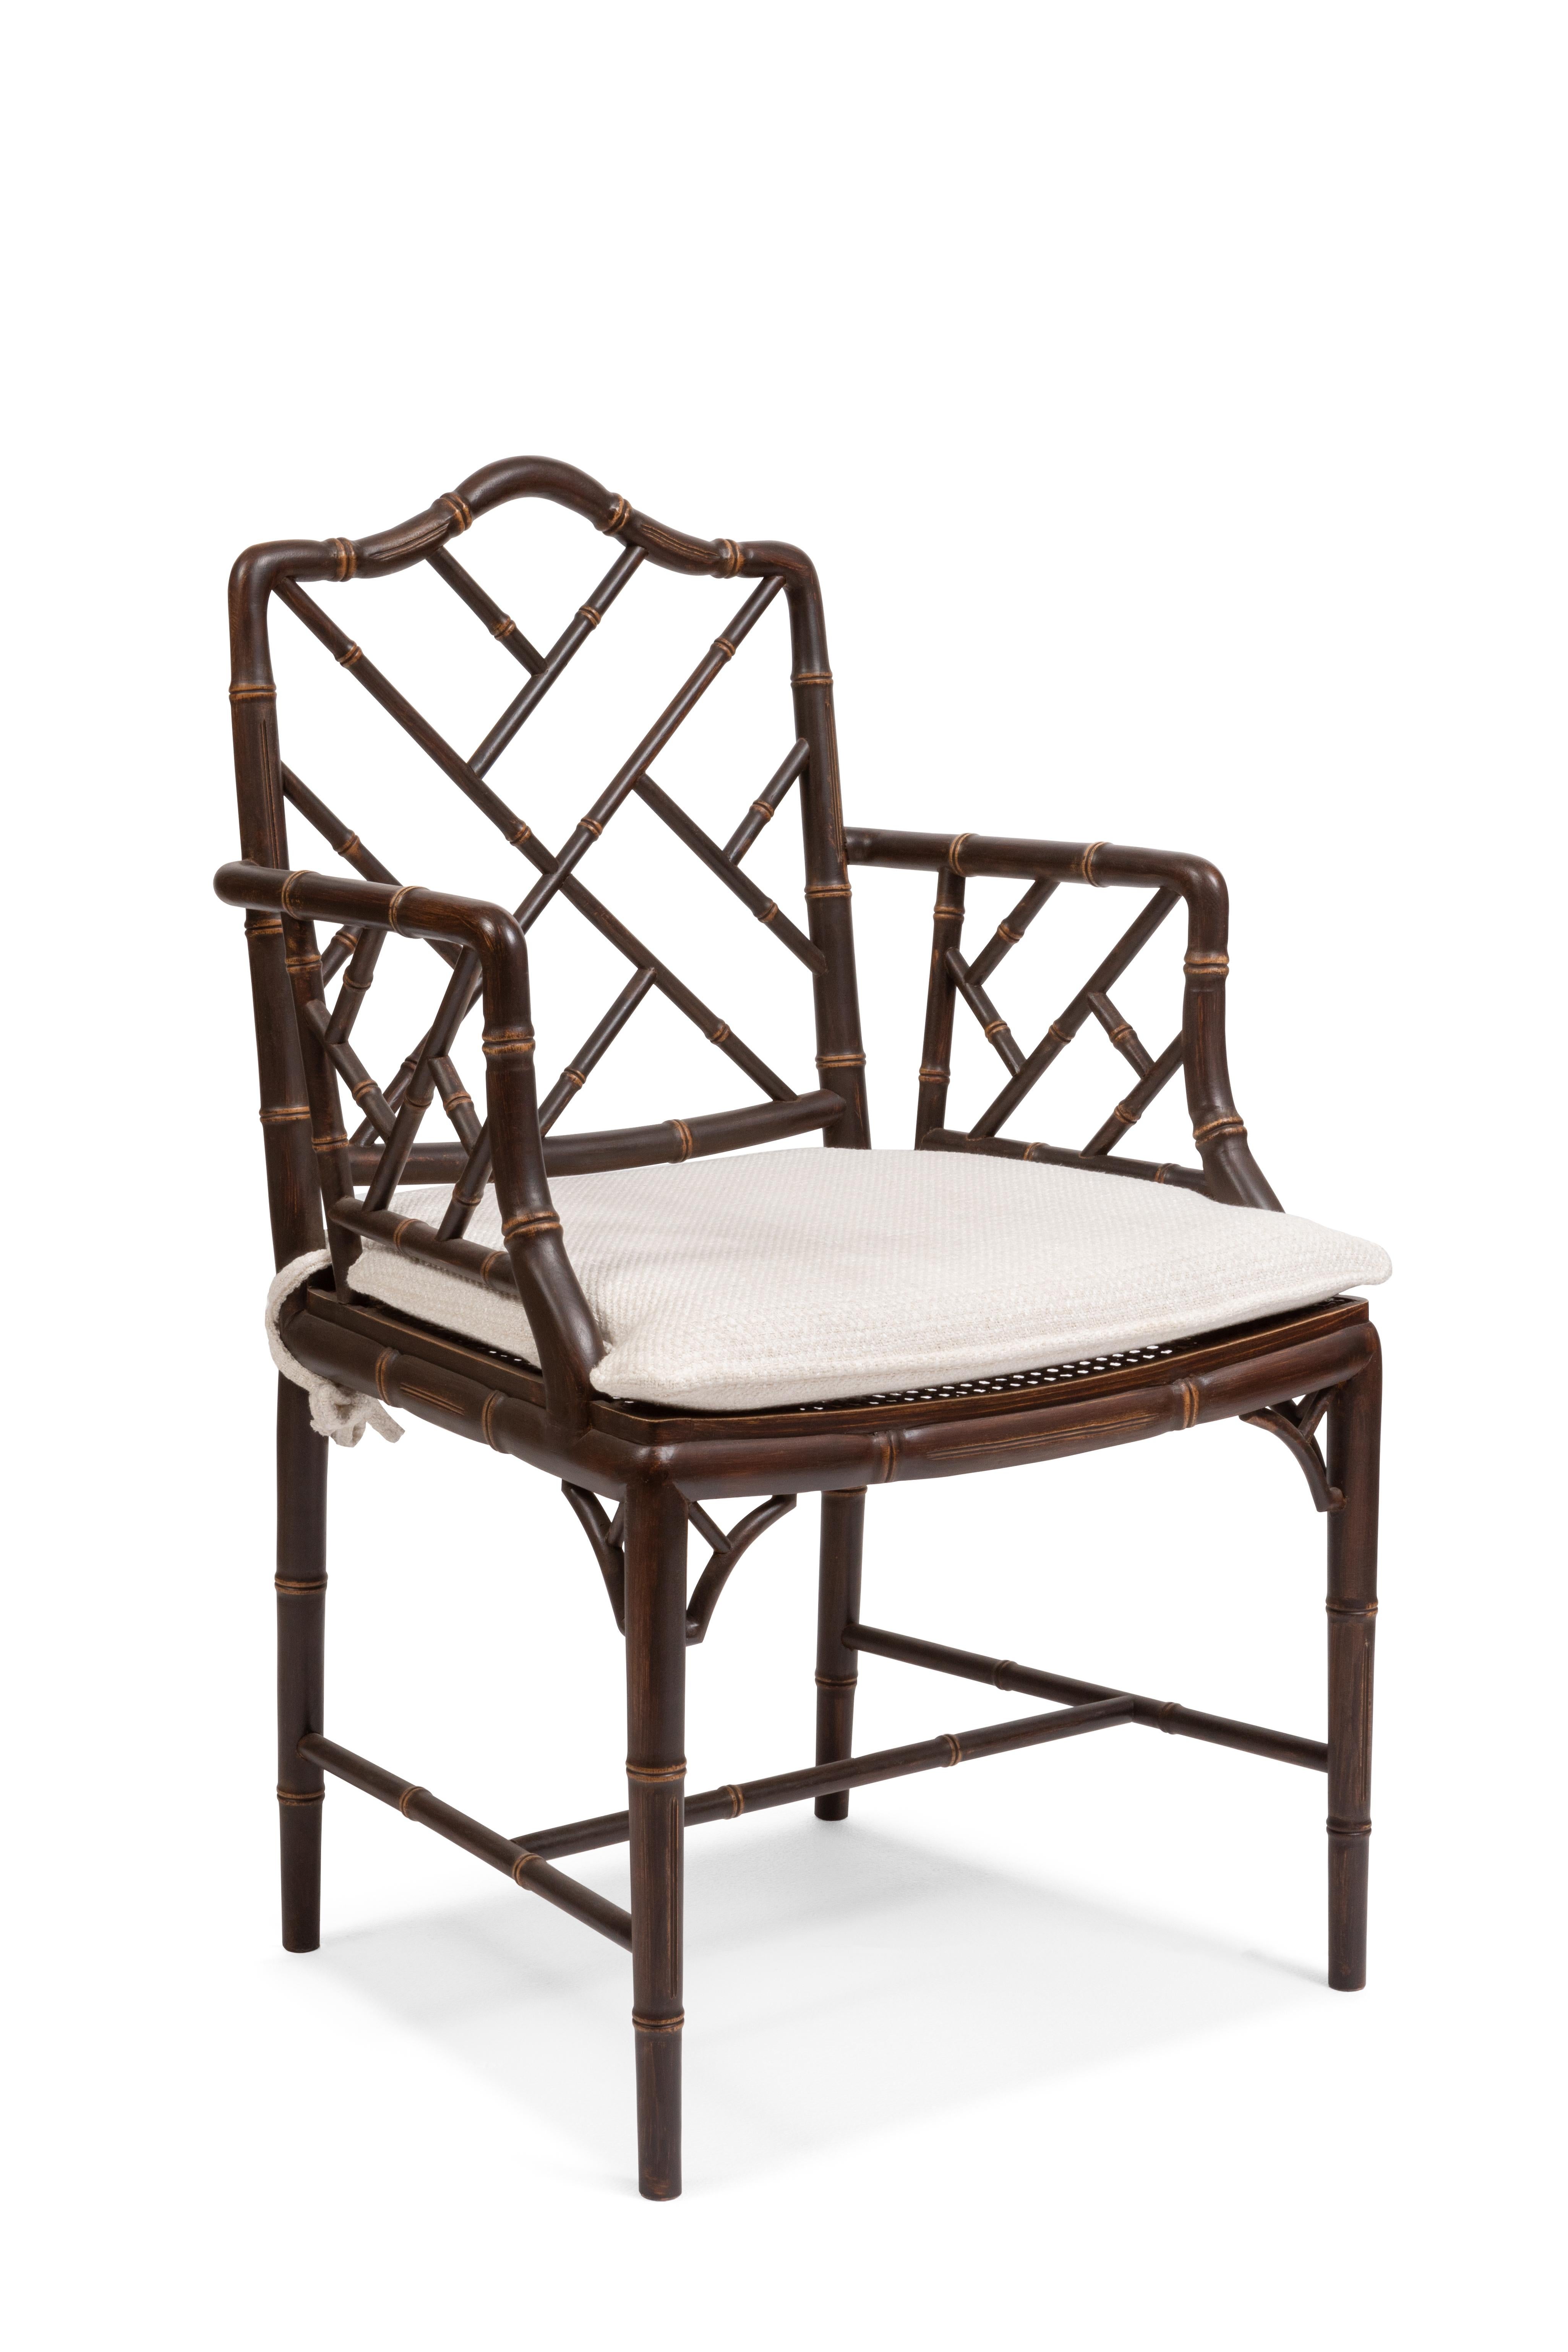 Holzstuhl mit Armlehnen, inspiriert vom chinesischen Chippendale-Stil. Dieser Sessel gehört zur 